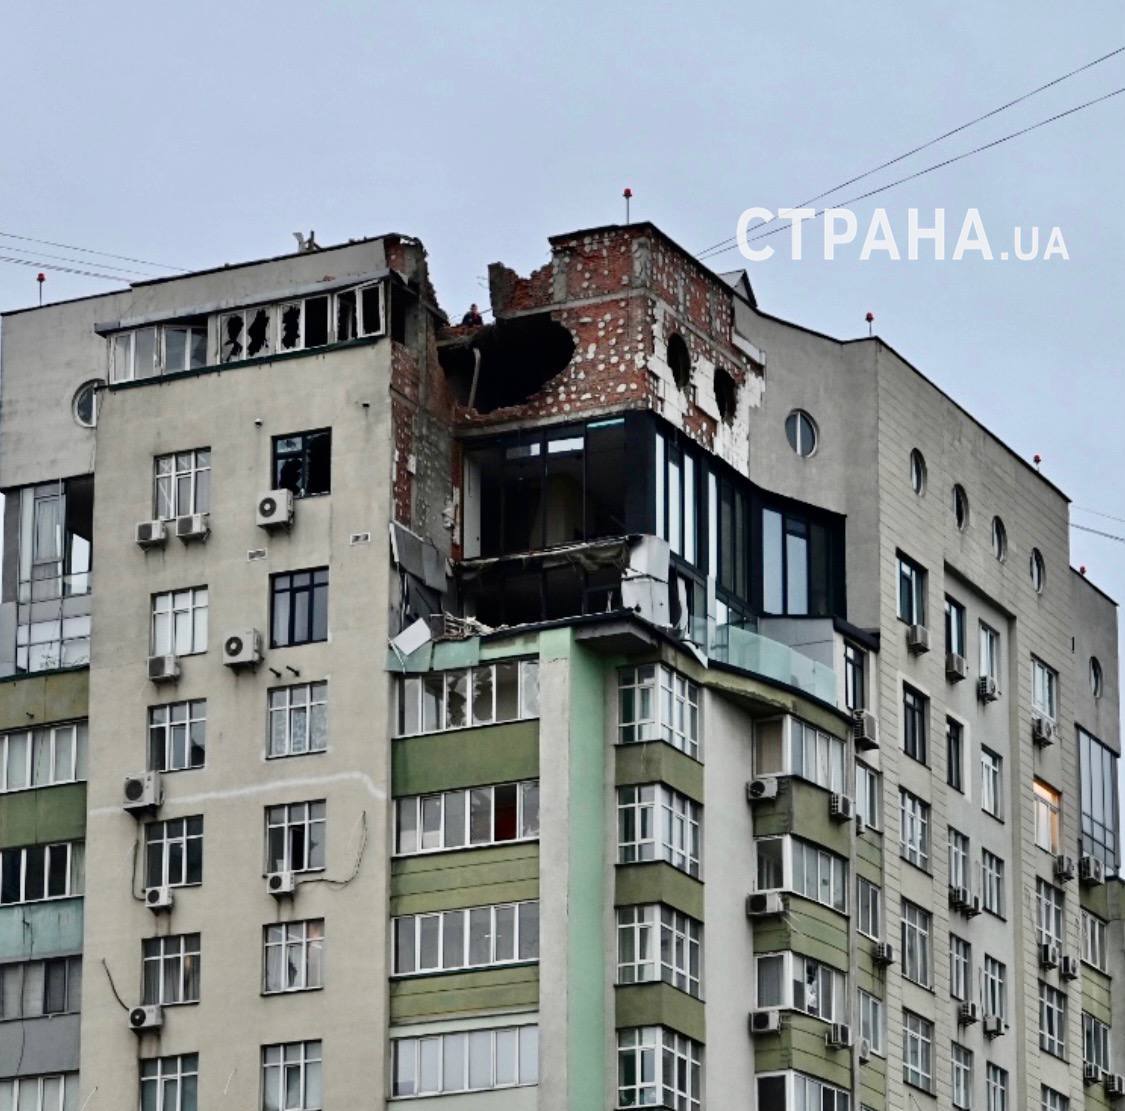 Последствия падения обломков дрона в Соломенском районе Киева